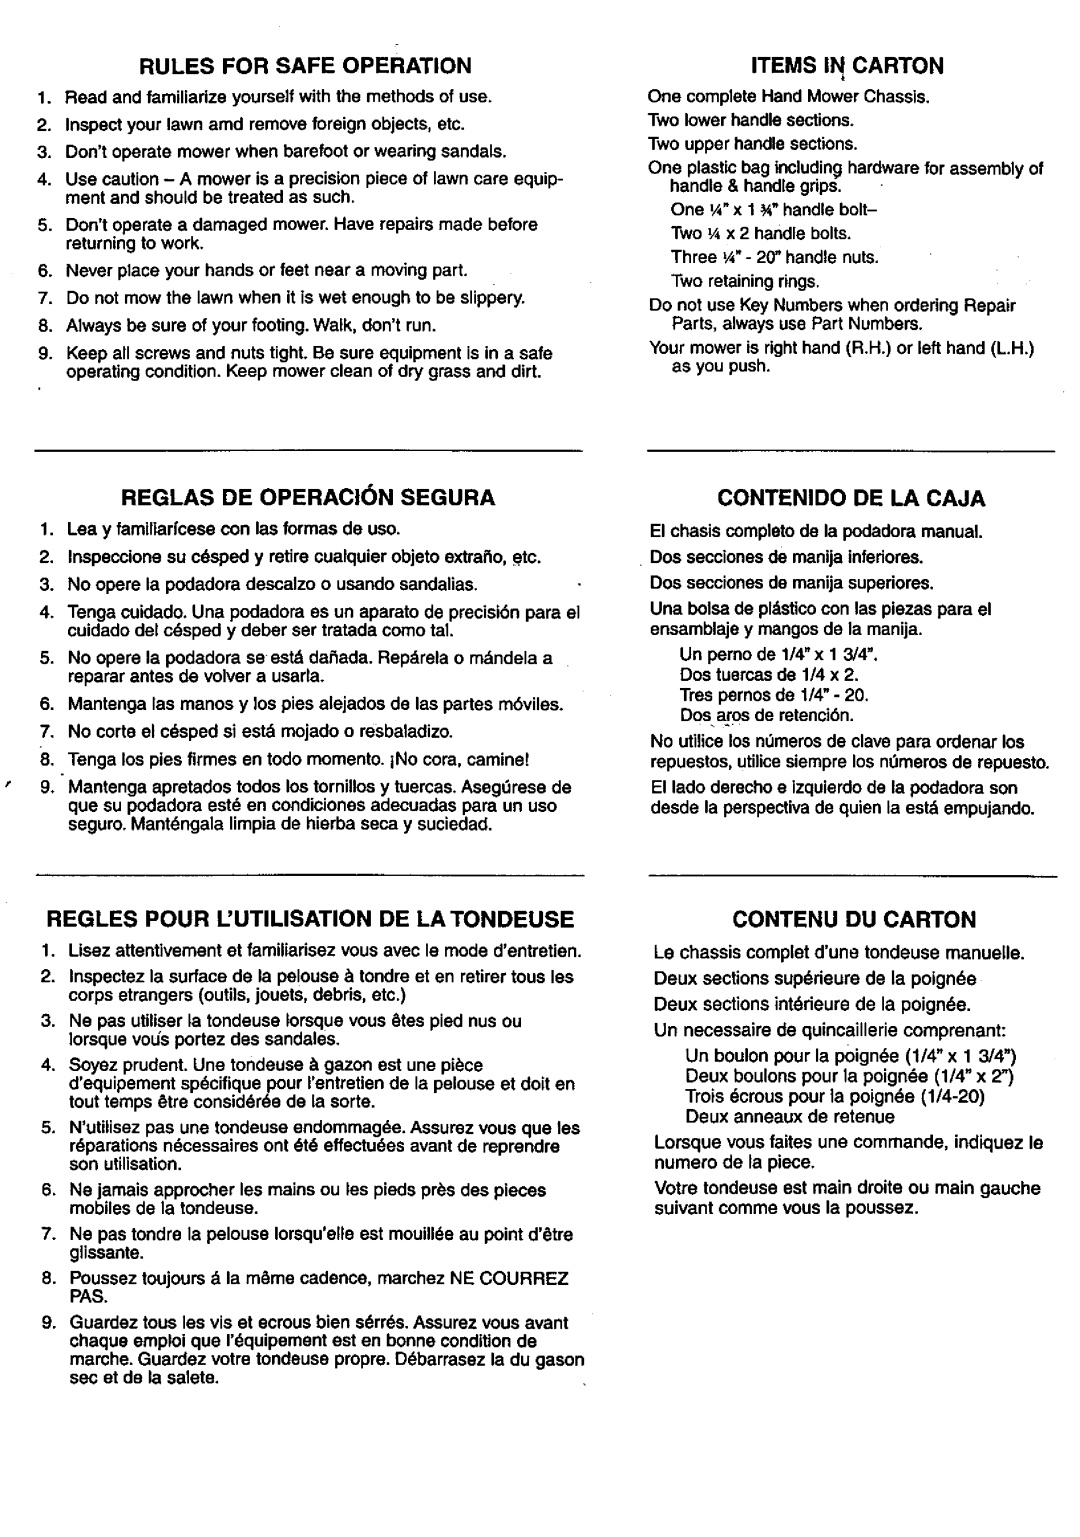 Craftsman 291.376101 owner manual Items Ii Carton, Reglas De Operaci N Segura, Contenido De La Caja, Contenu Du Carton 